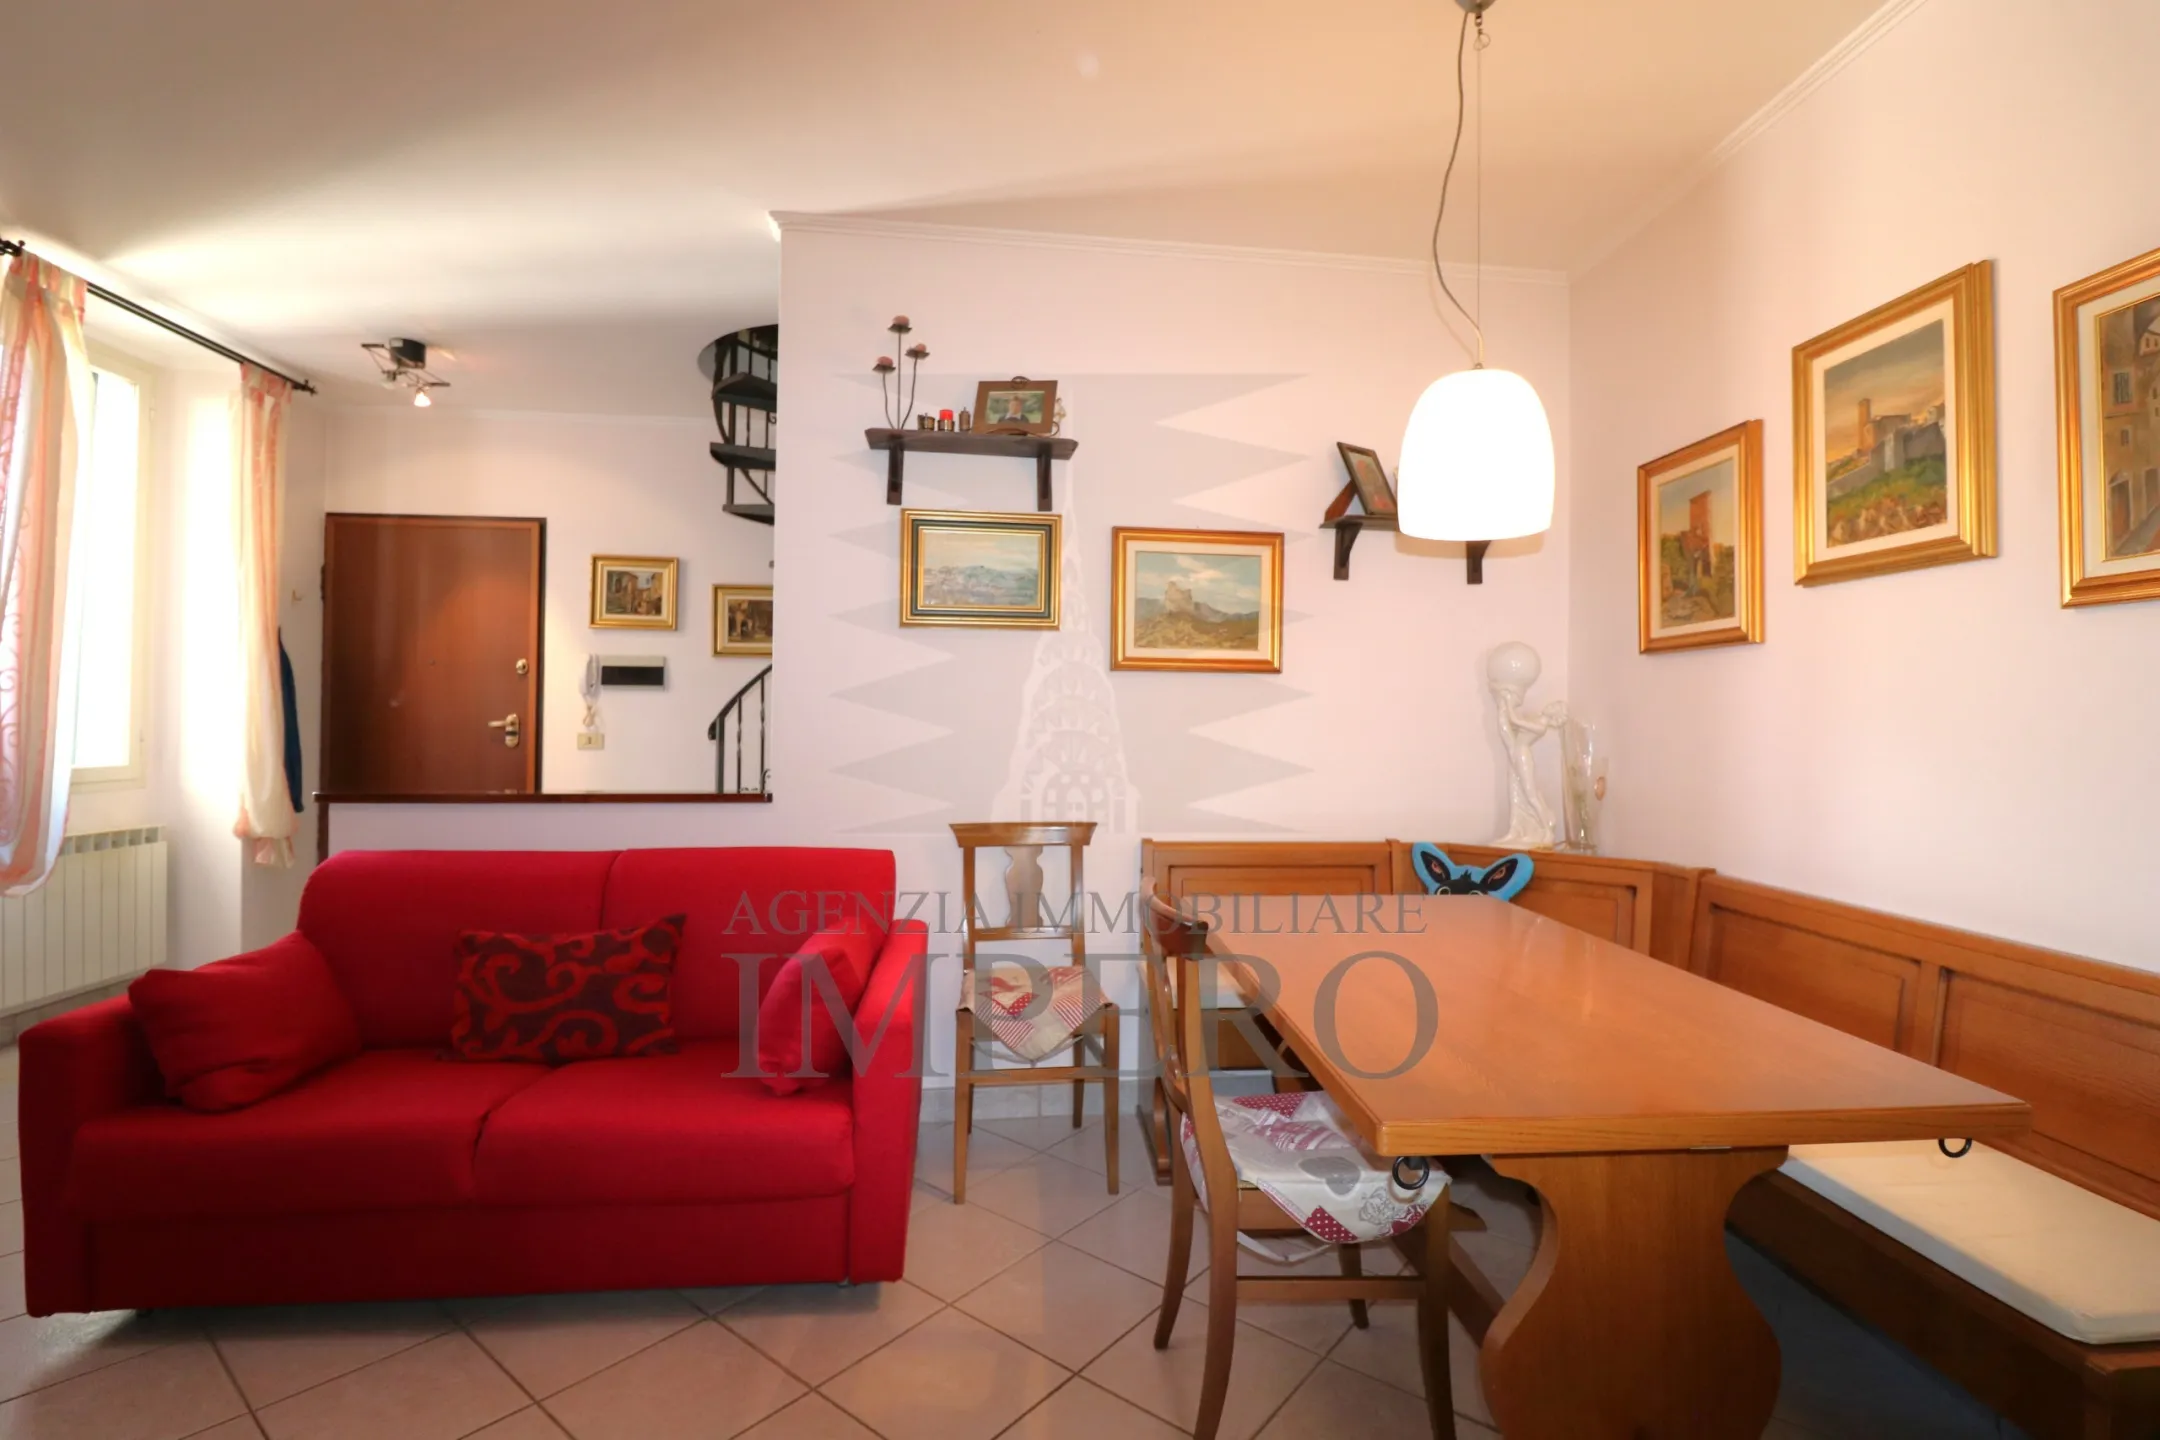 Immagine per Appartamento in vendita a Ventimiglia via Garibaldi